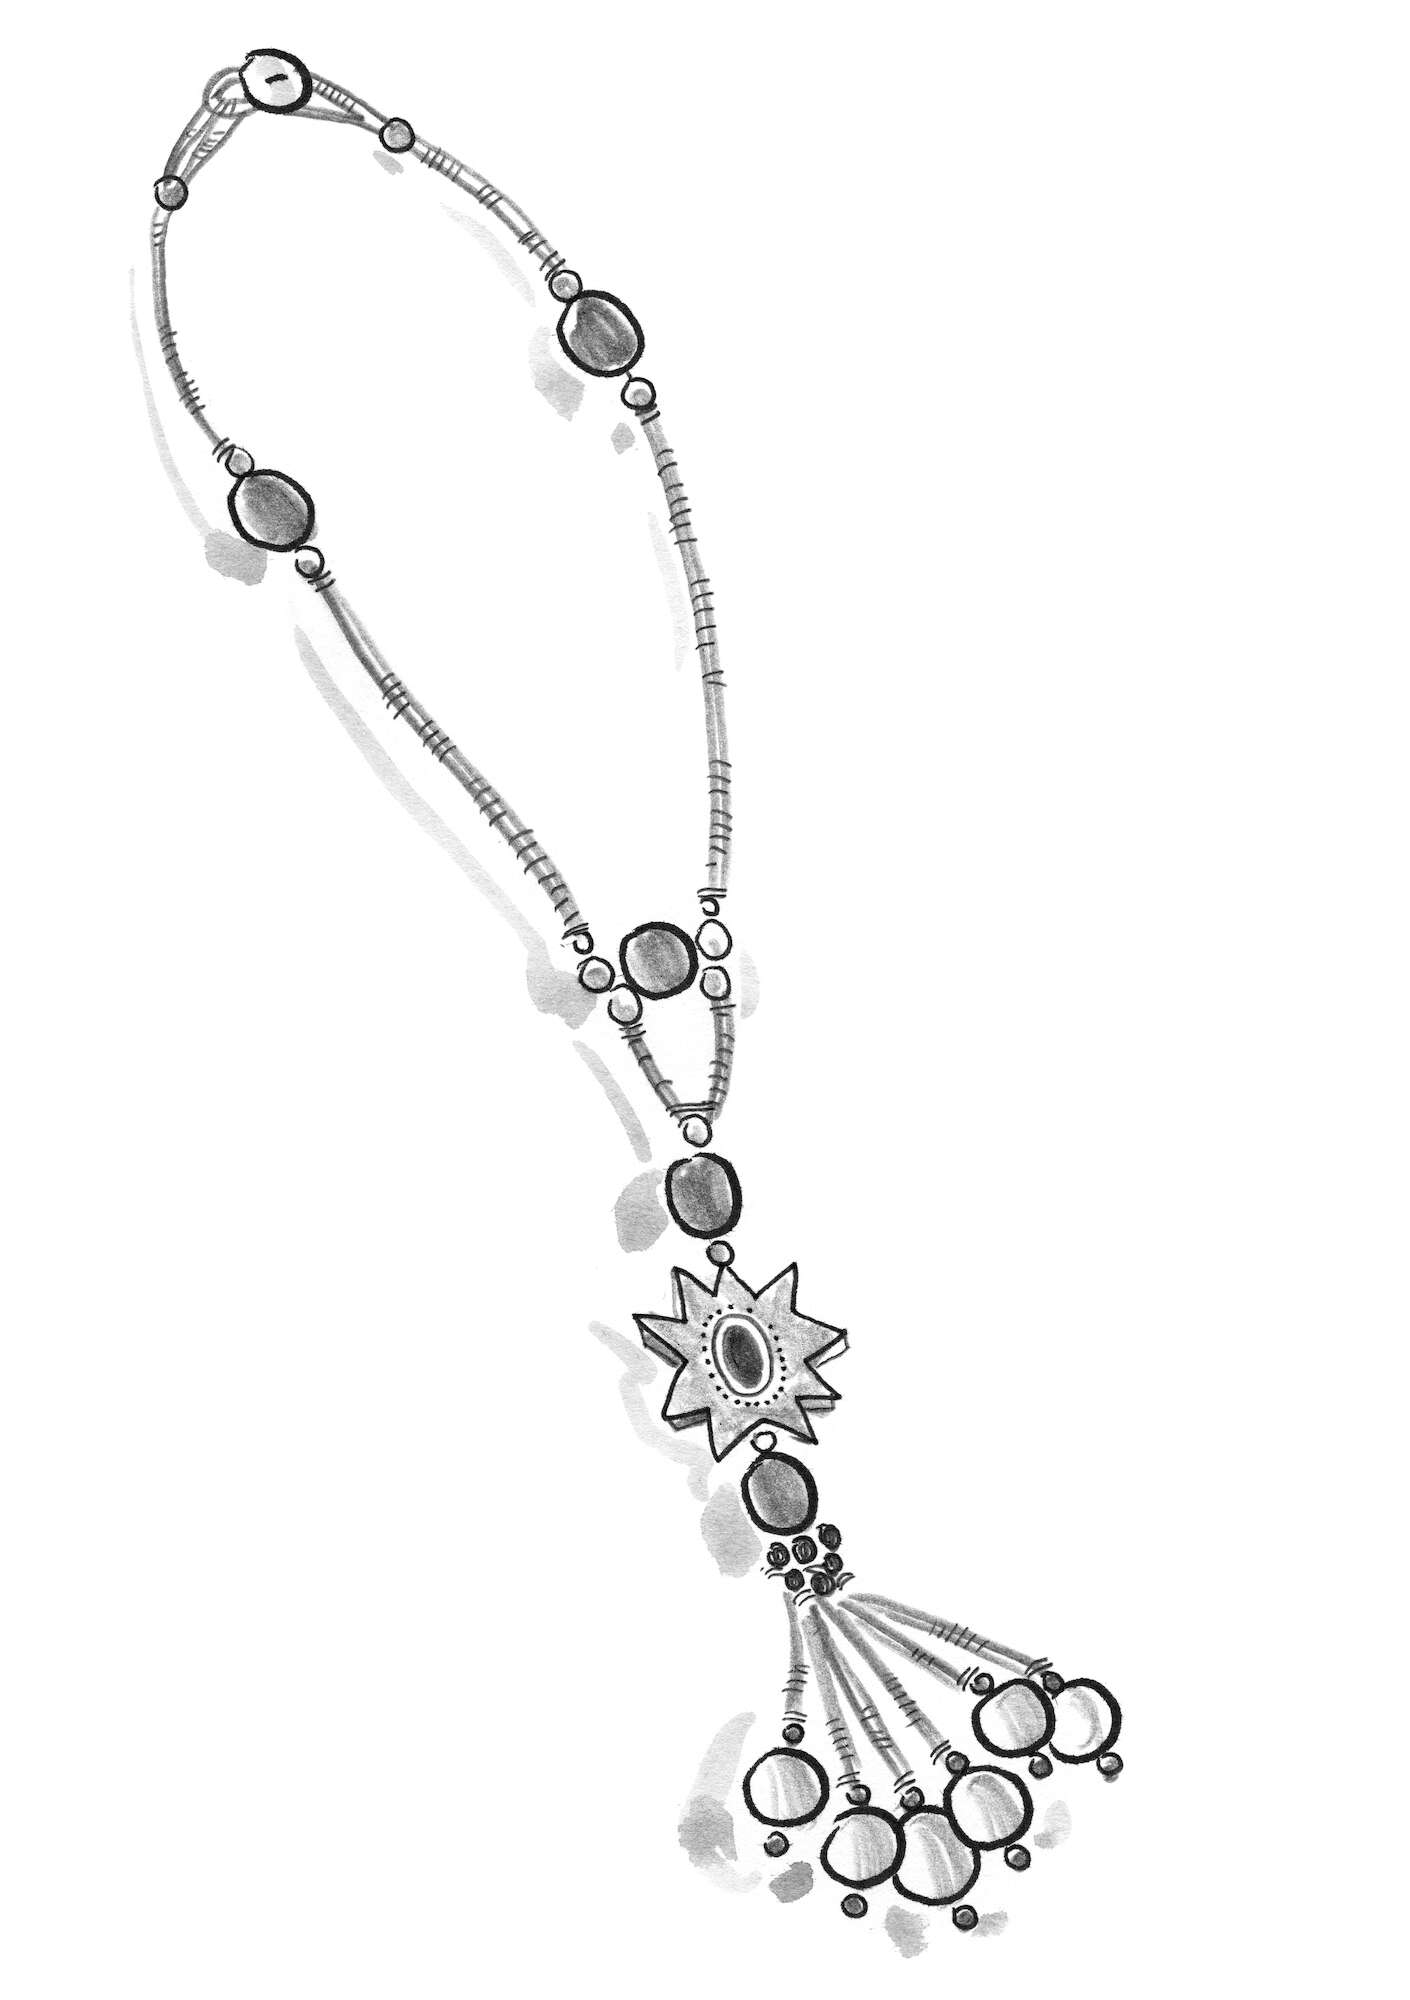 “Zazu” necklace